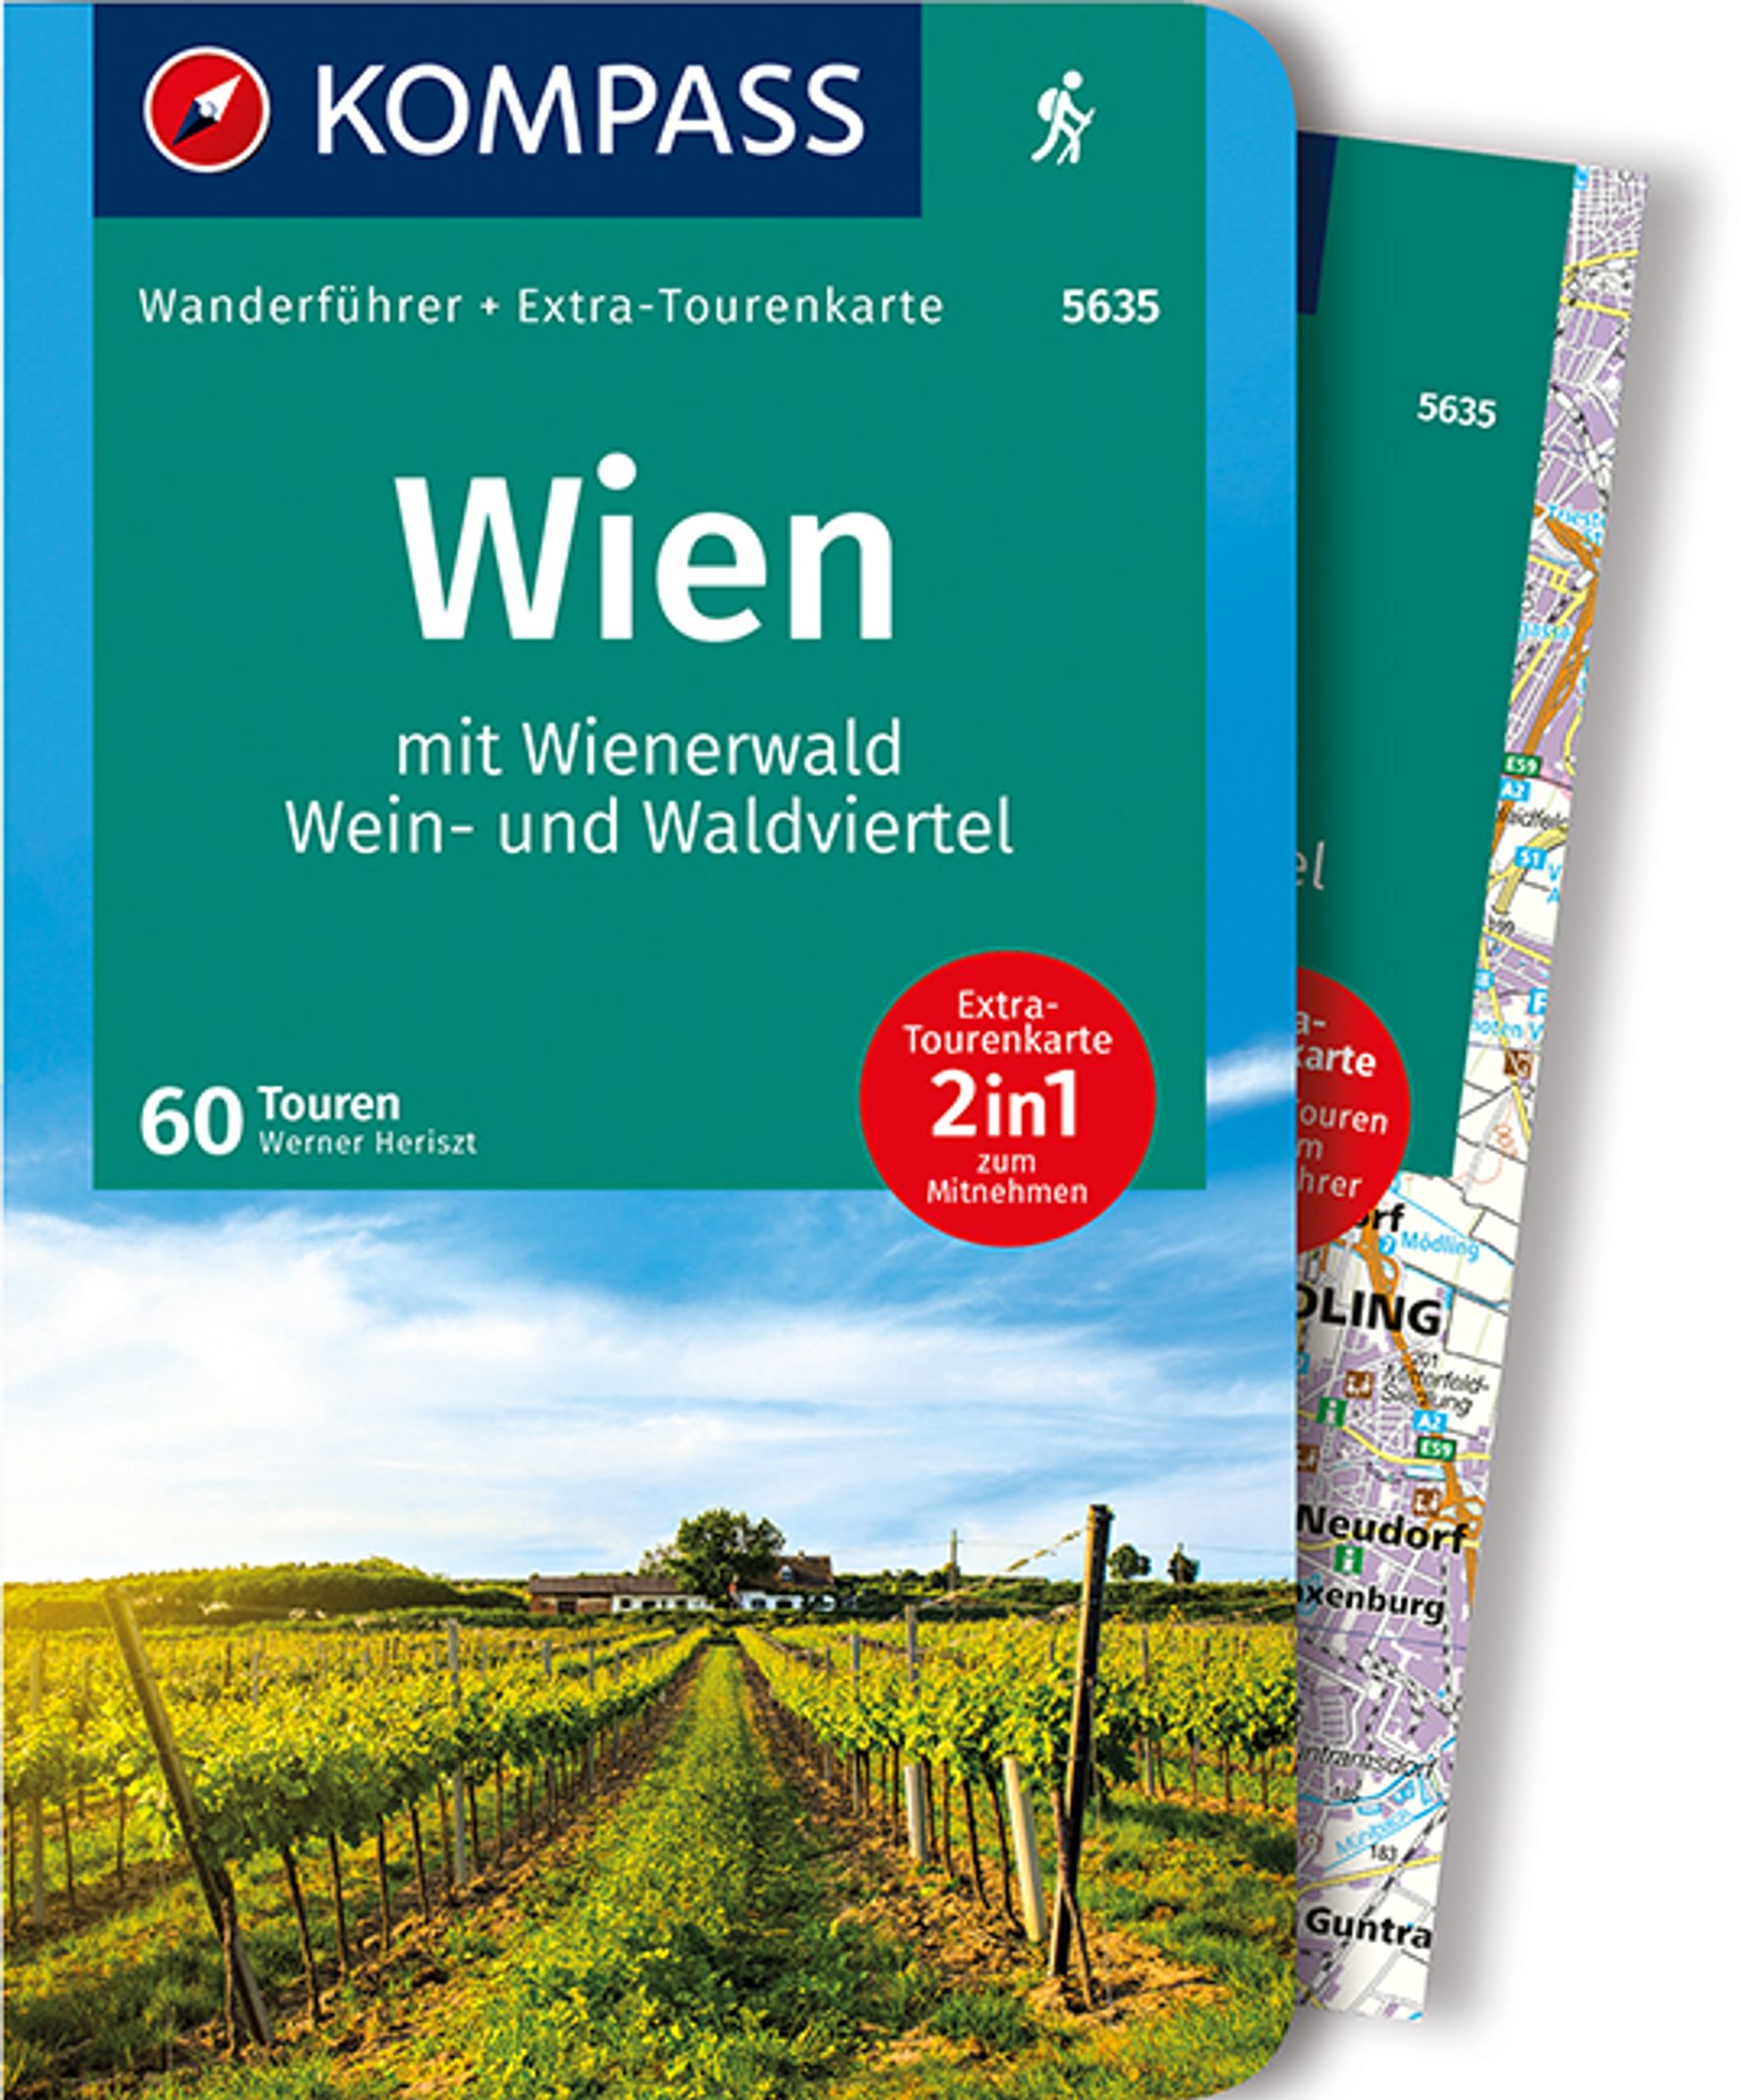 MAIRDUMONT KOMPASS Wanderführer 5635 Wien mit Wienerwald, Wein- und Waldviertel